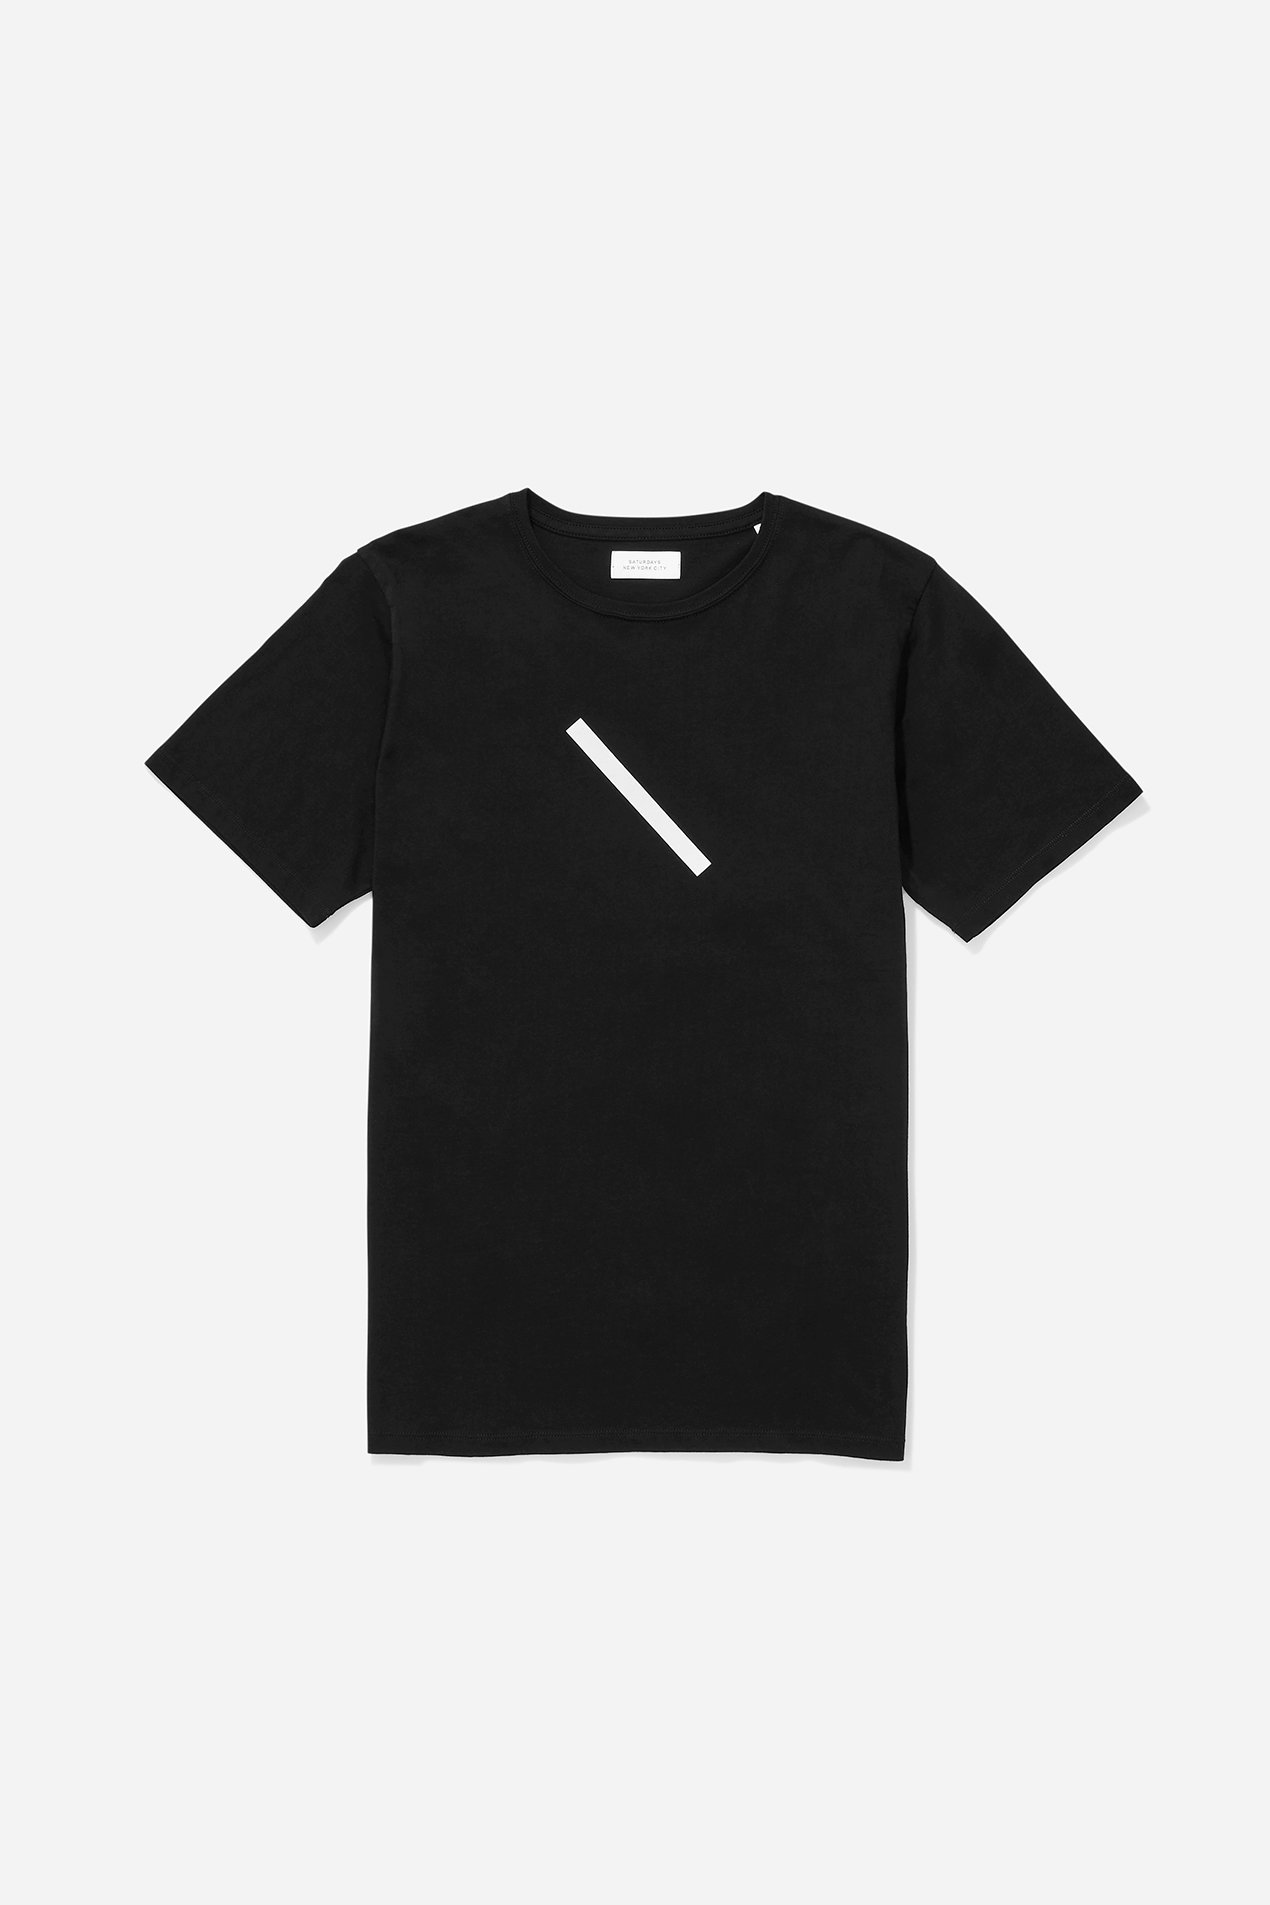 Saturdays NYC slash t-shirt- black.jpg